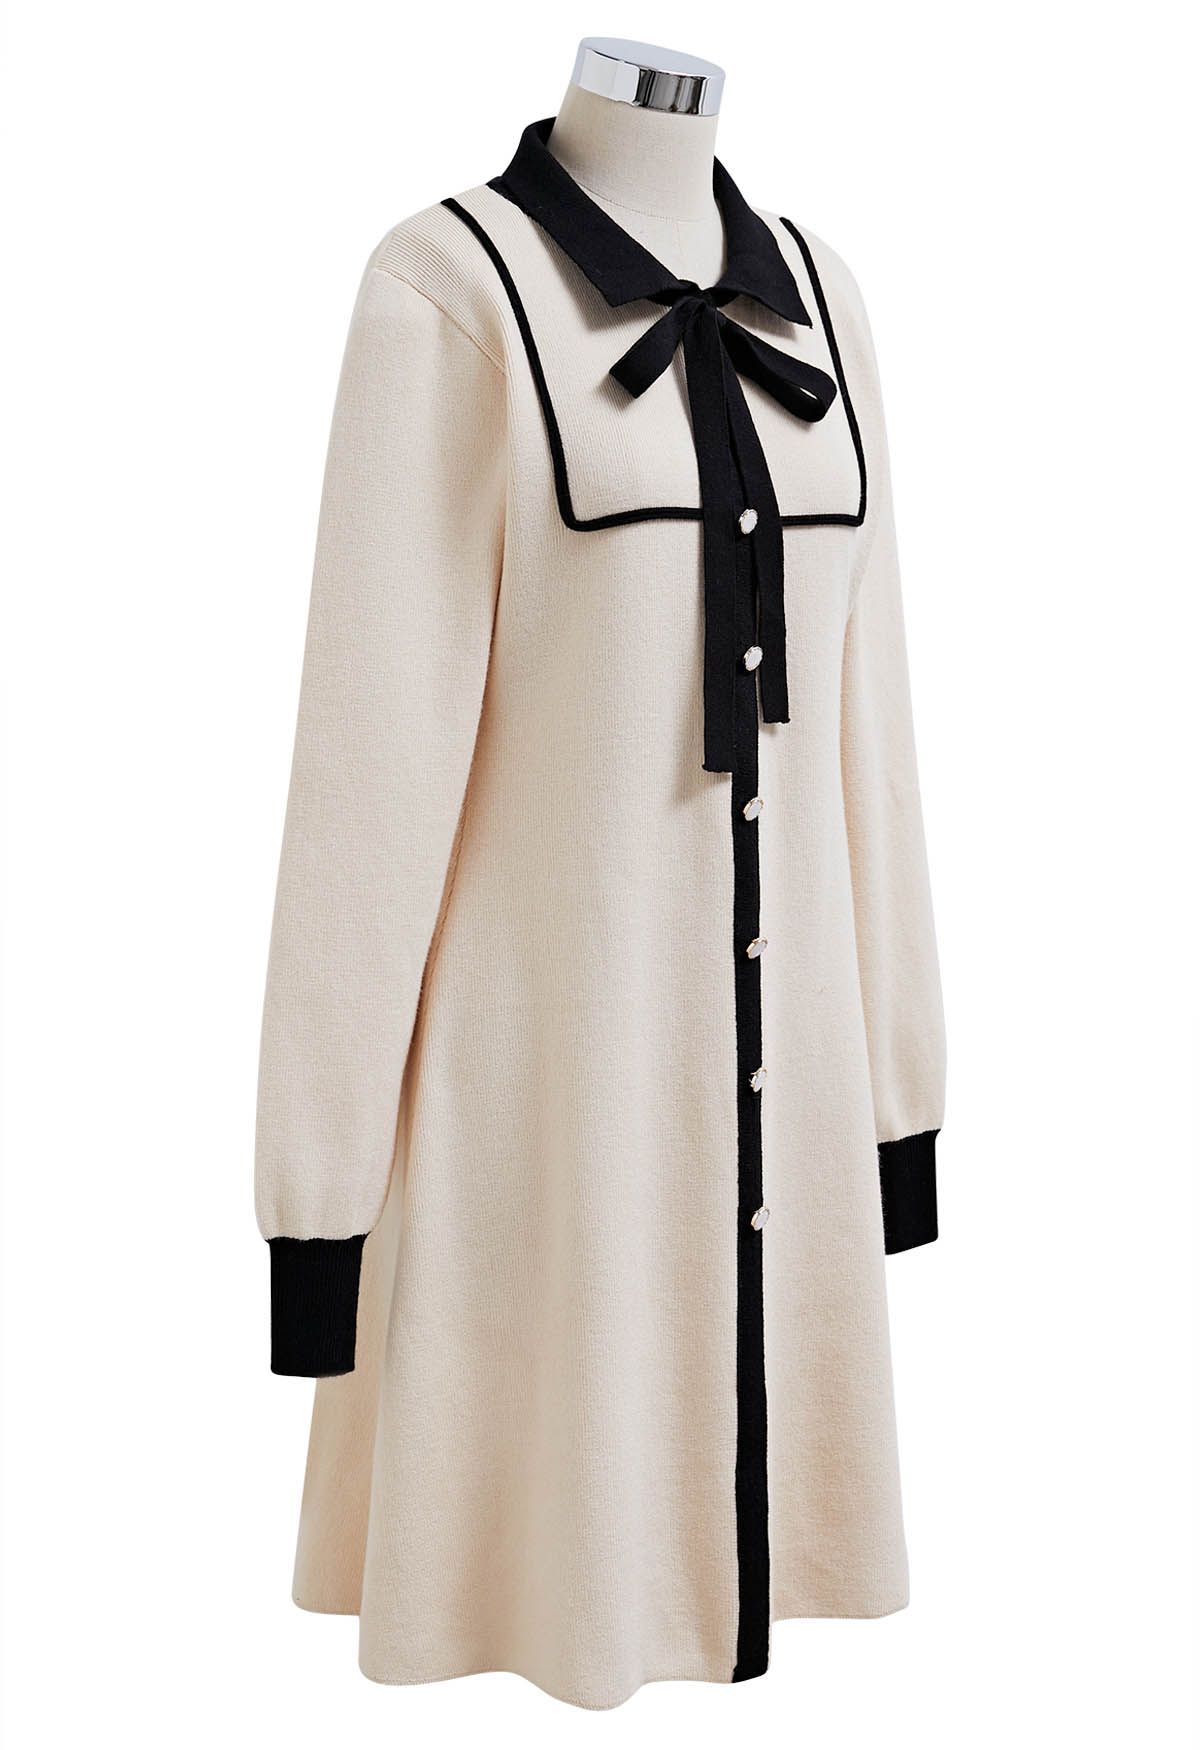 Vestido de punto tipo polo con bordes en contraste en color crema